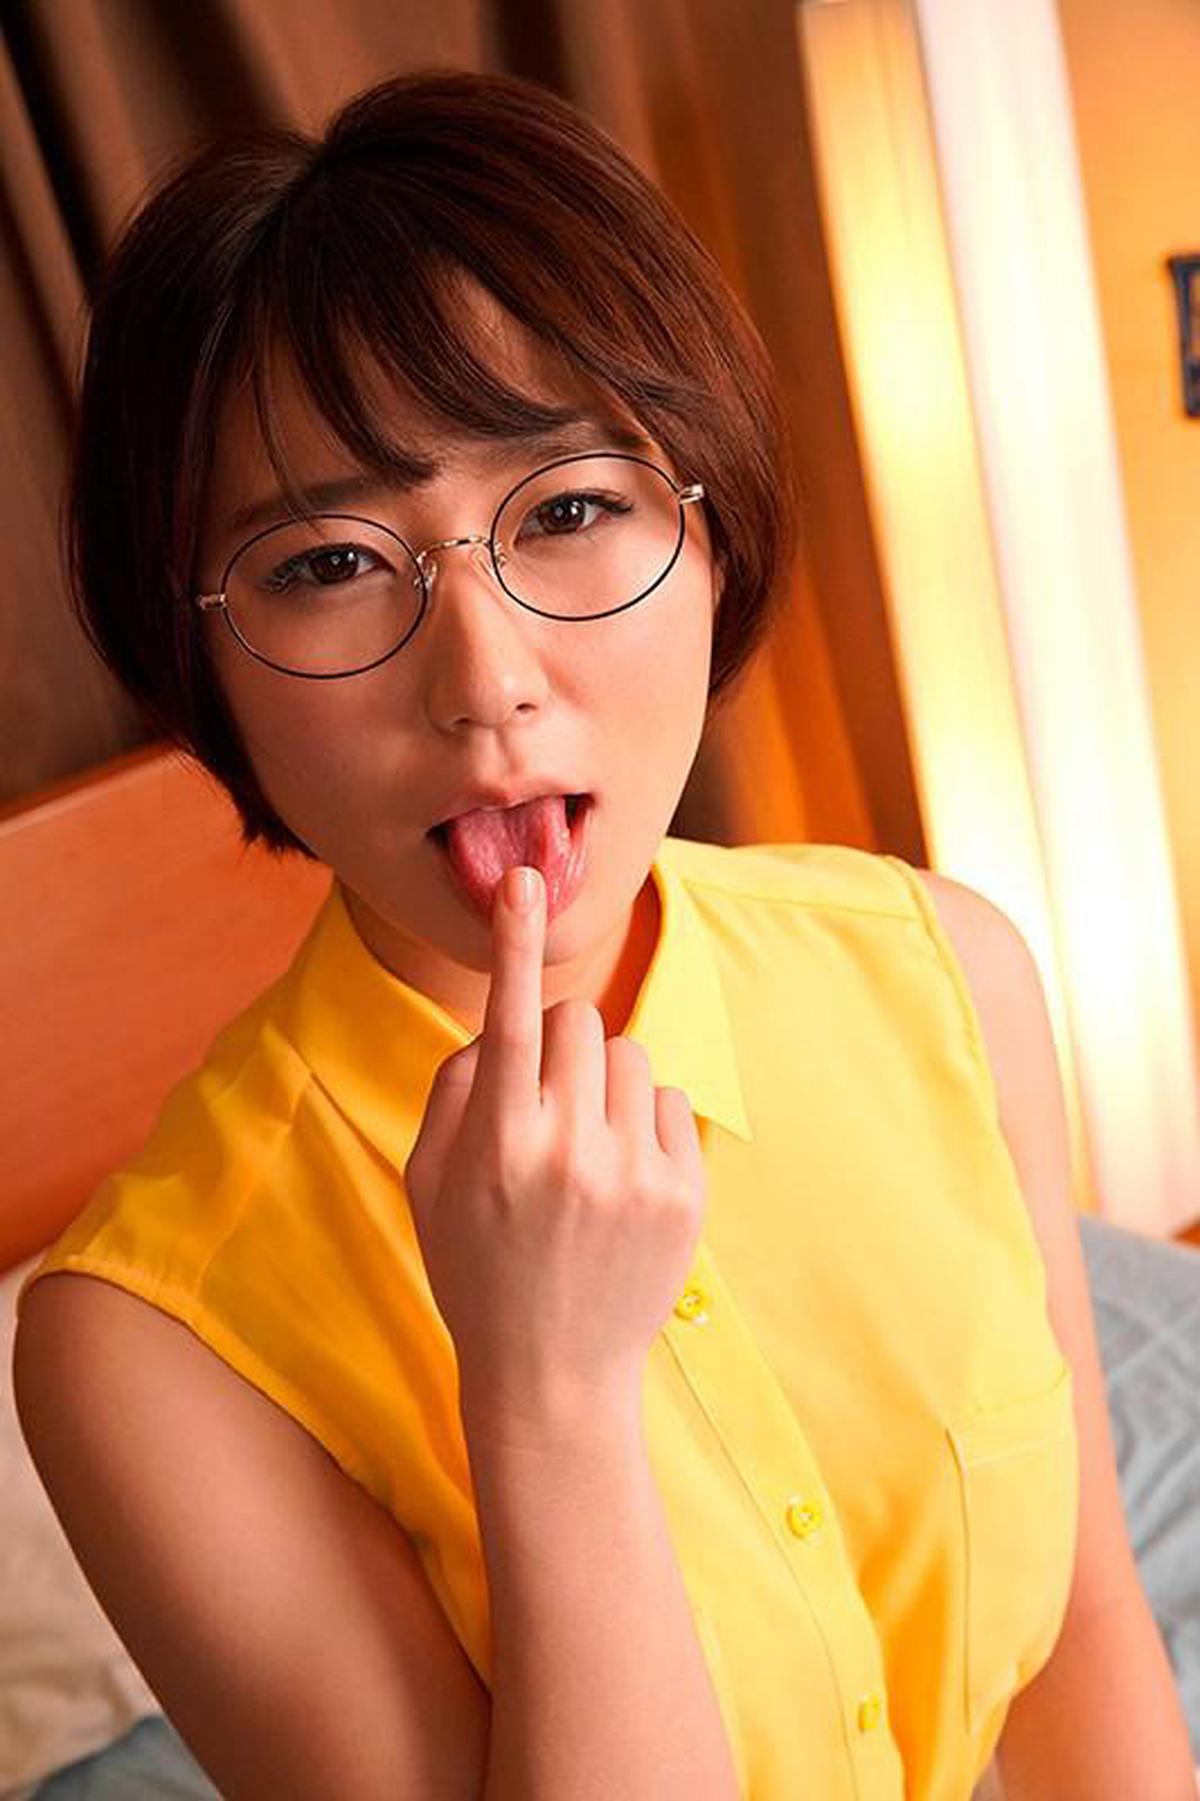 (VR) (LR) KMVR-810 SEX Horizawa Yui Viele Male mit einer nüchternen College-Studentin, die Sperma mag, die nur am Tag des Eisprungs Sex hat und an gefährlichen Tagen kontinuierliche Creampie-Aussaat hat